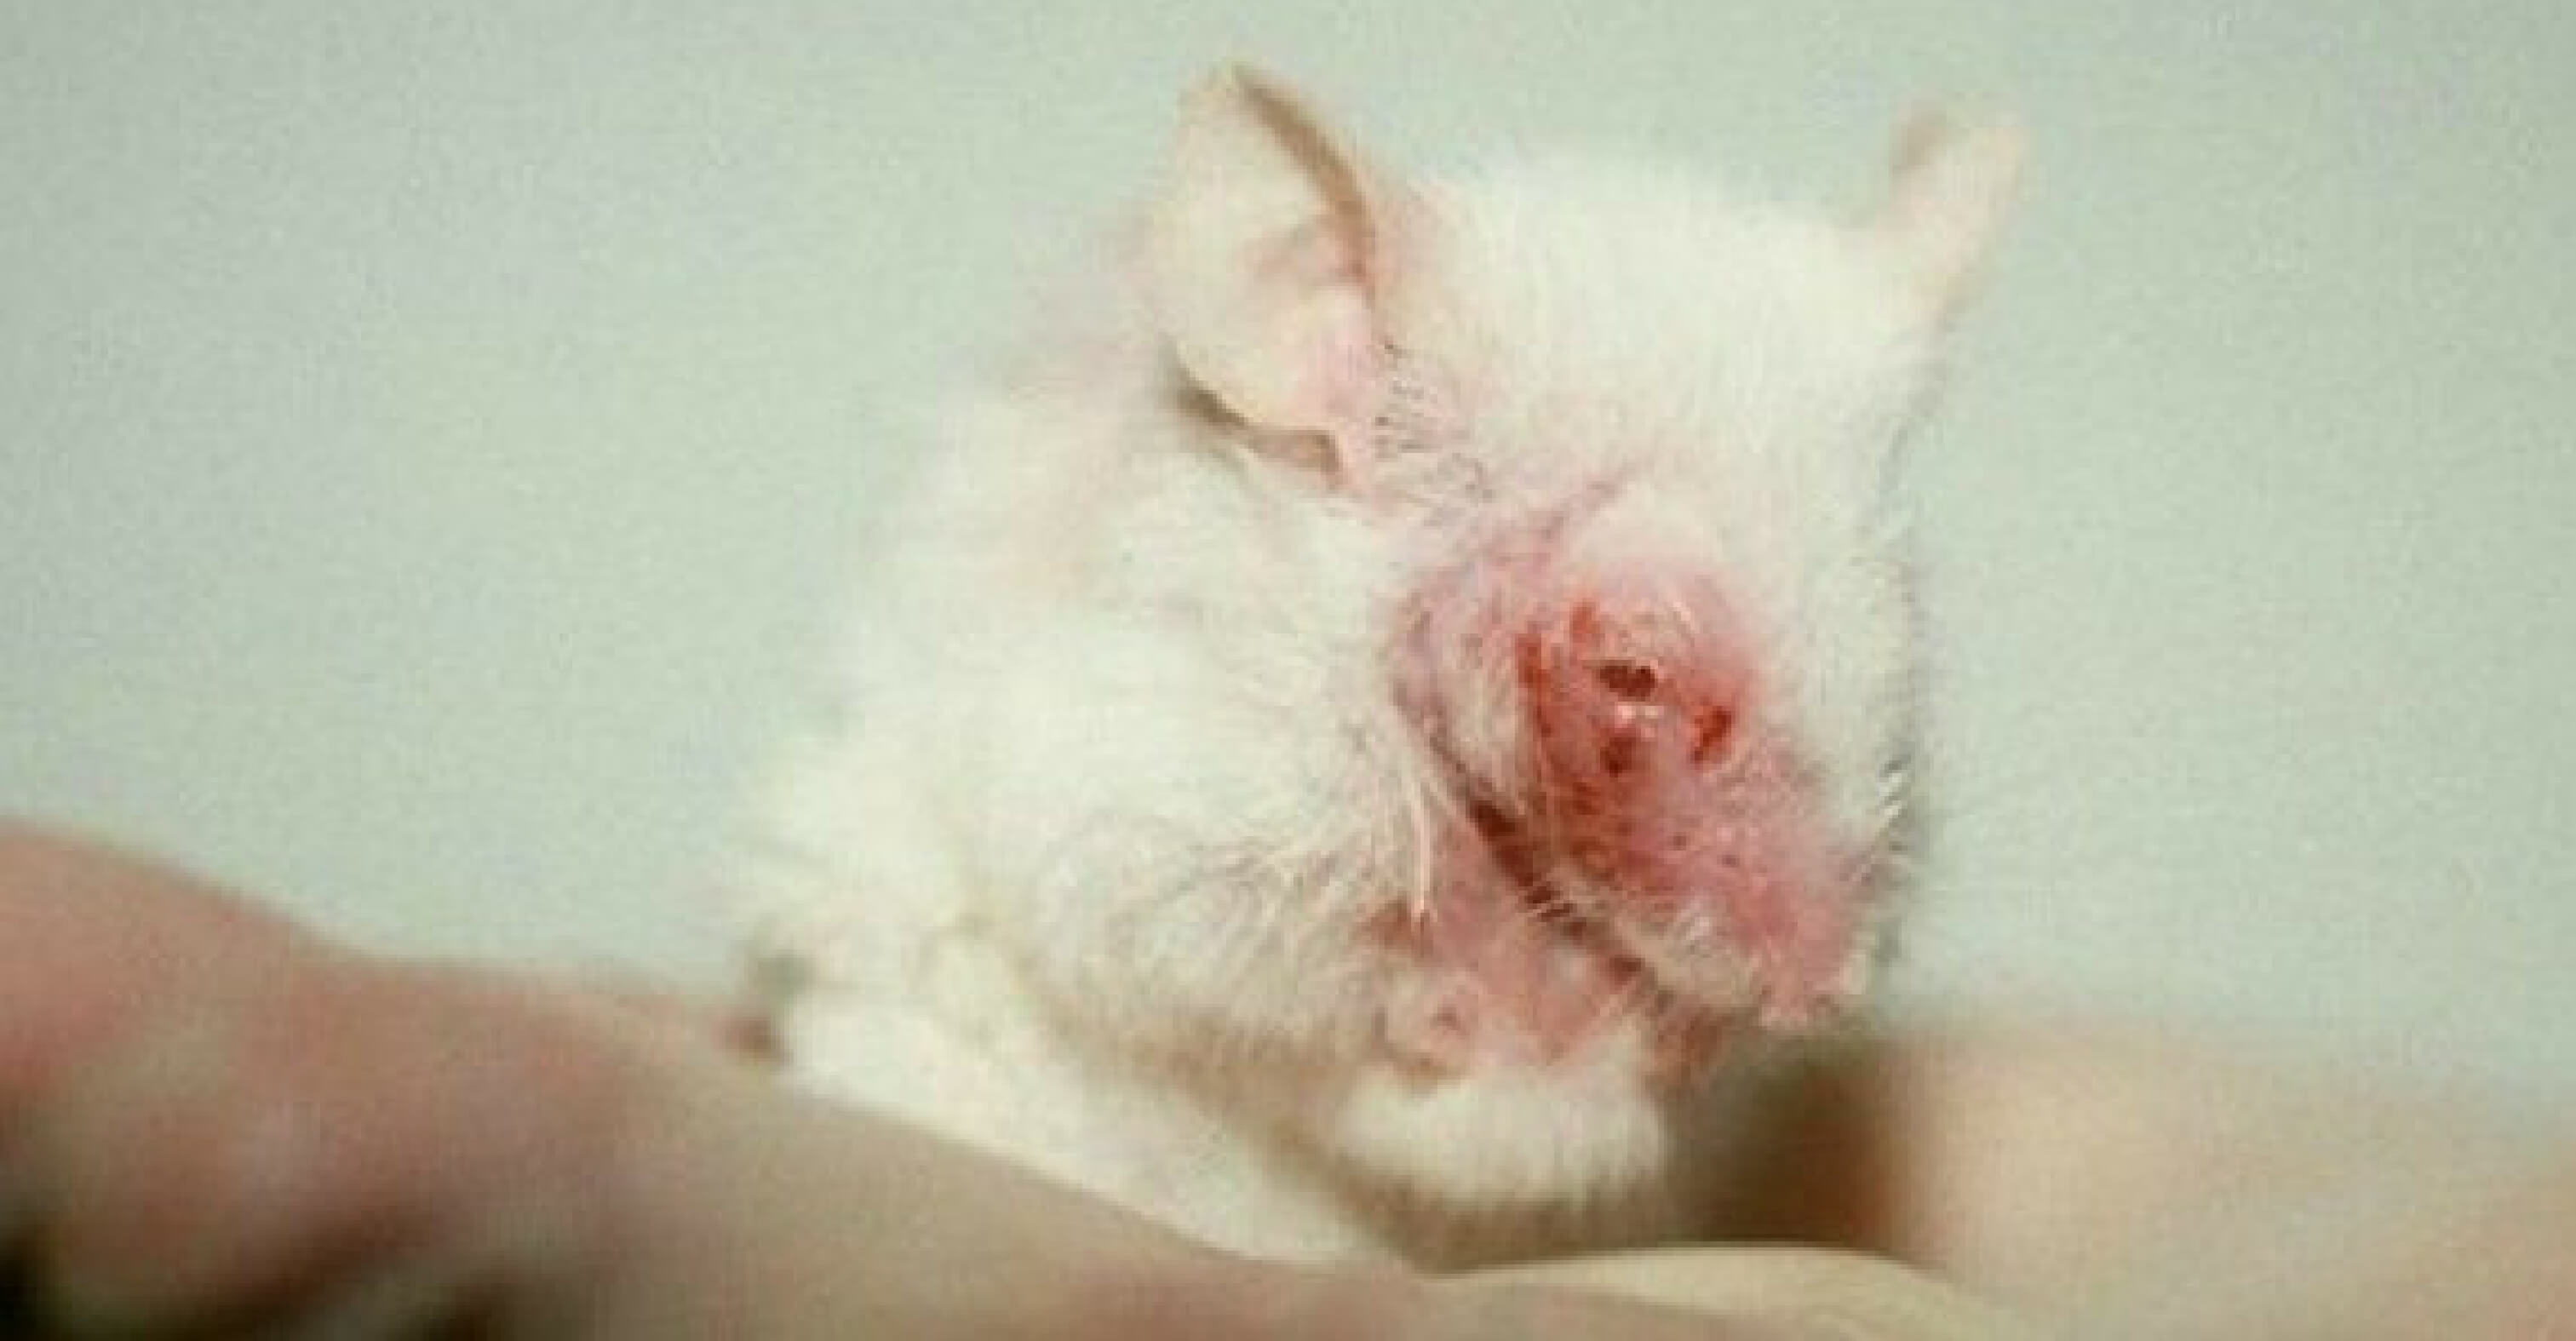 Un rapport de l’UE révèle un catalogue de souffrances : 20 millions d’animaux utilisés dans des expériences